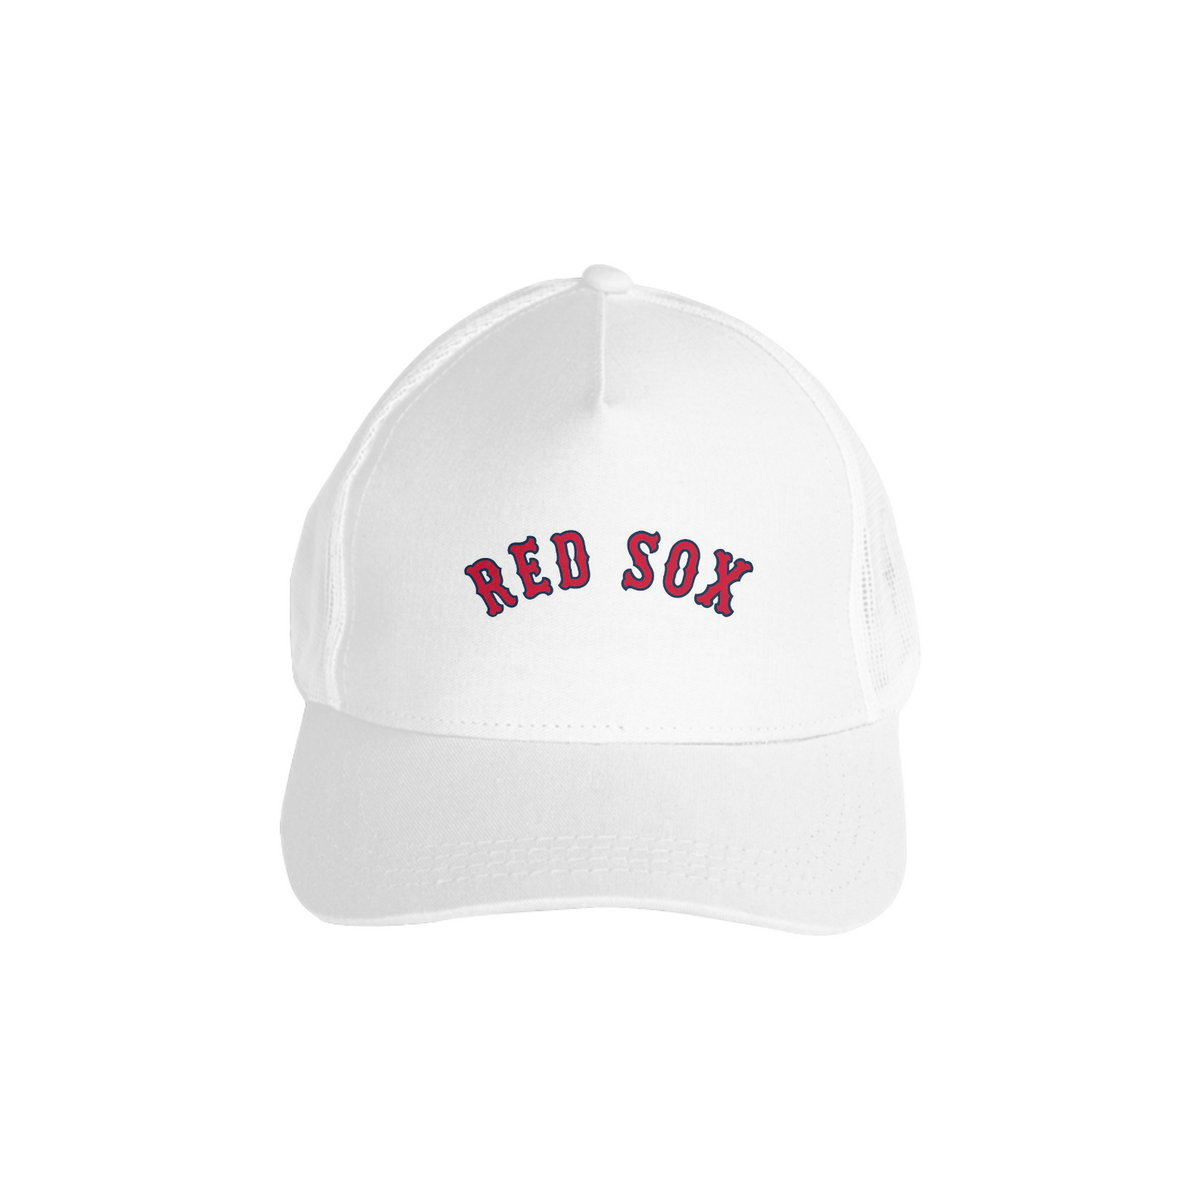 Nome do produtobone time de baseball, boston red sox